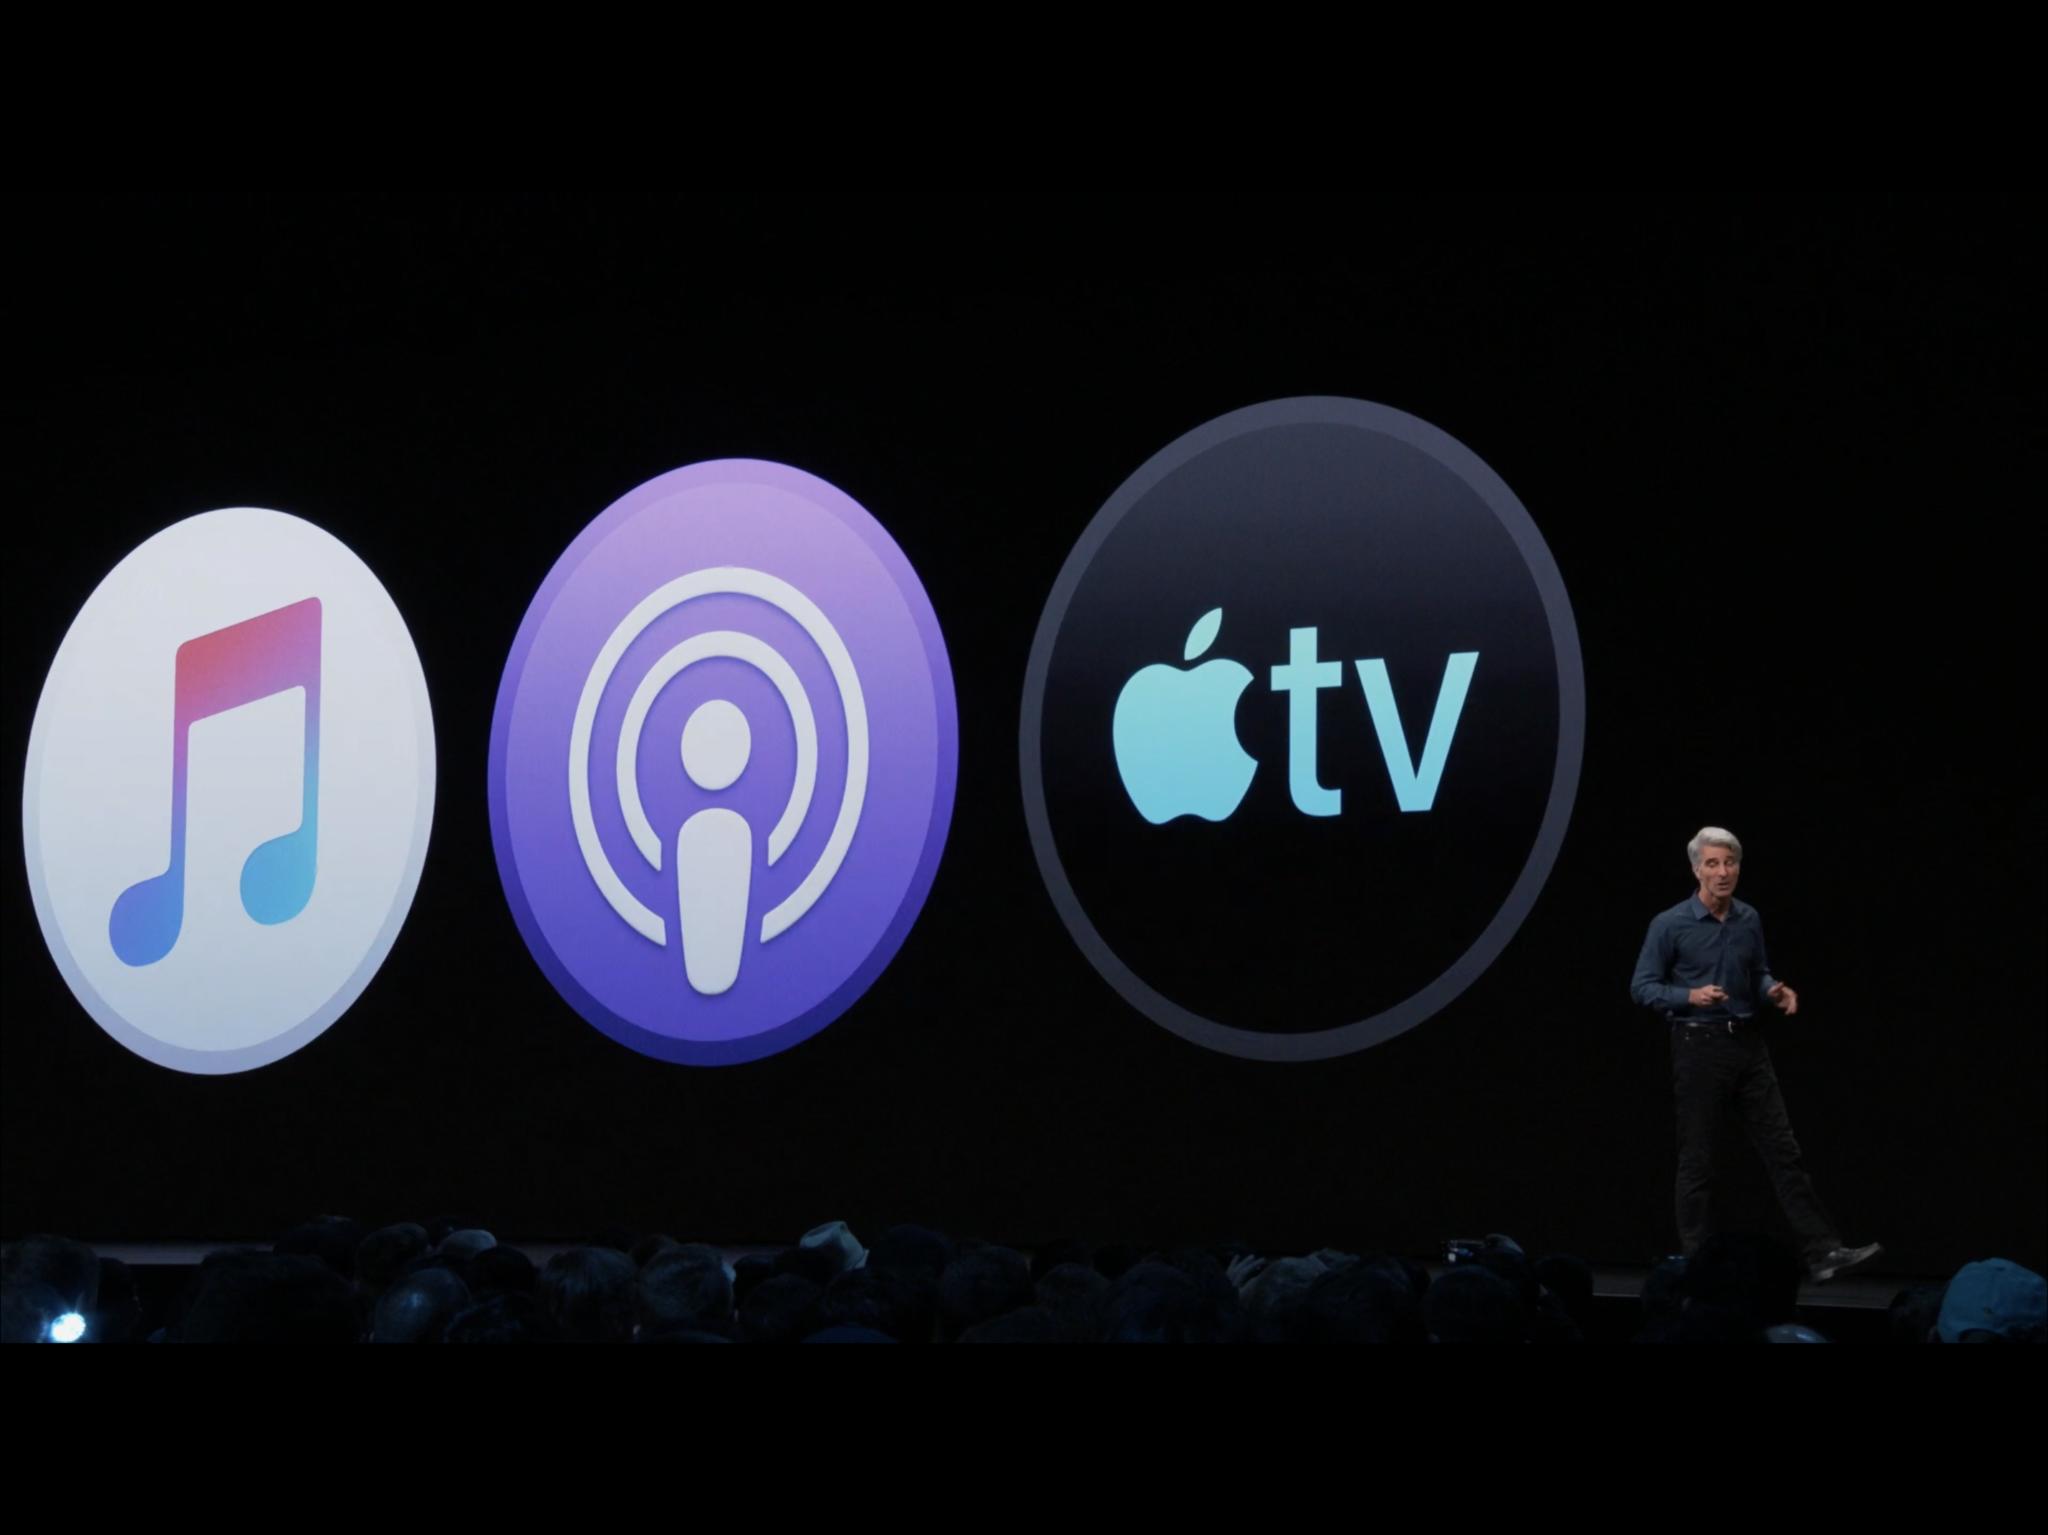 Mac Os Catalina Apple Tv App